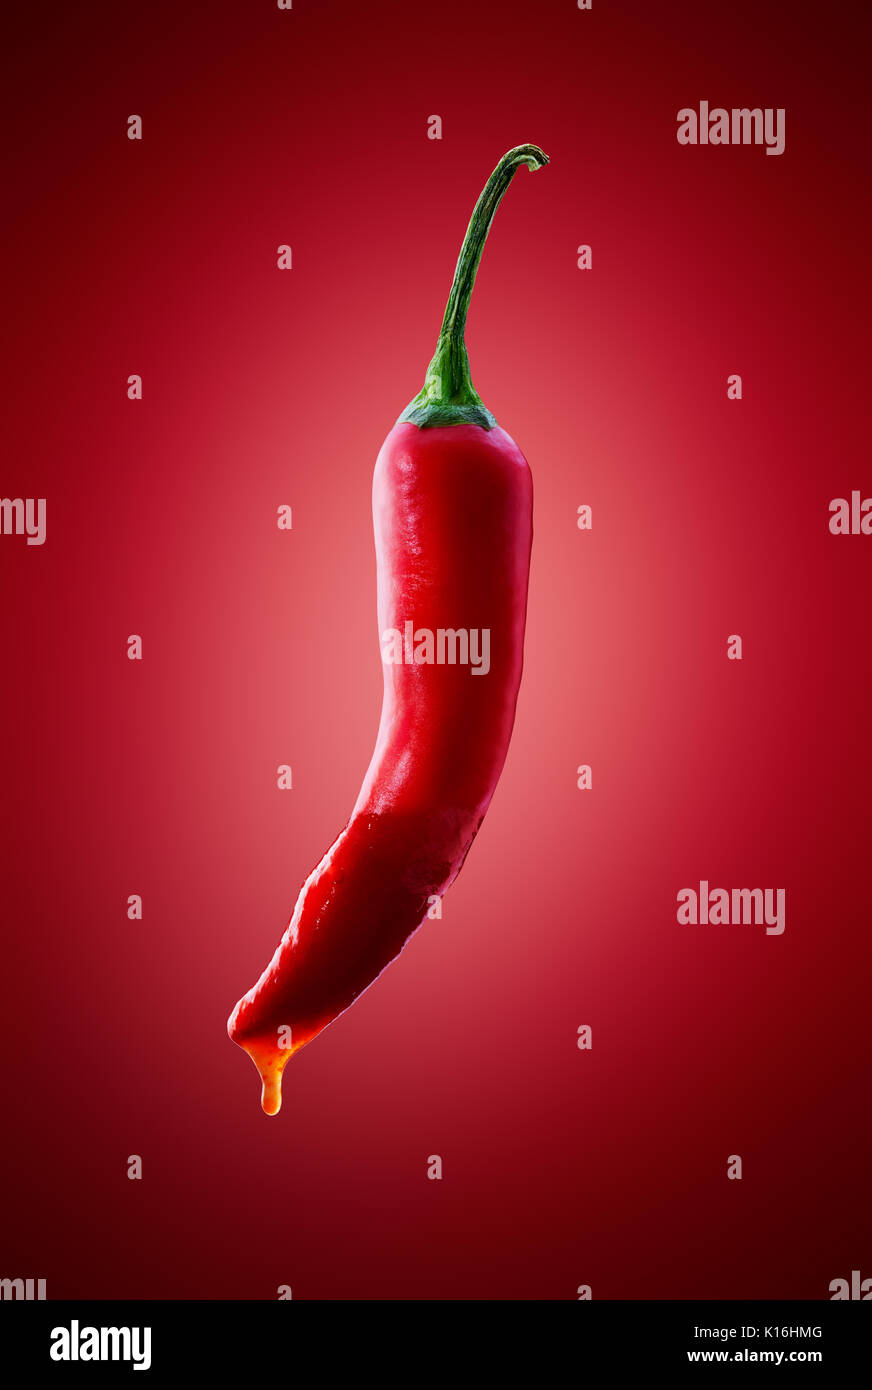 Red Chili Pfeffer mit Hot Chili Sauce tropft auf verlaufshintergrund Stockfoto